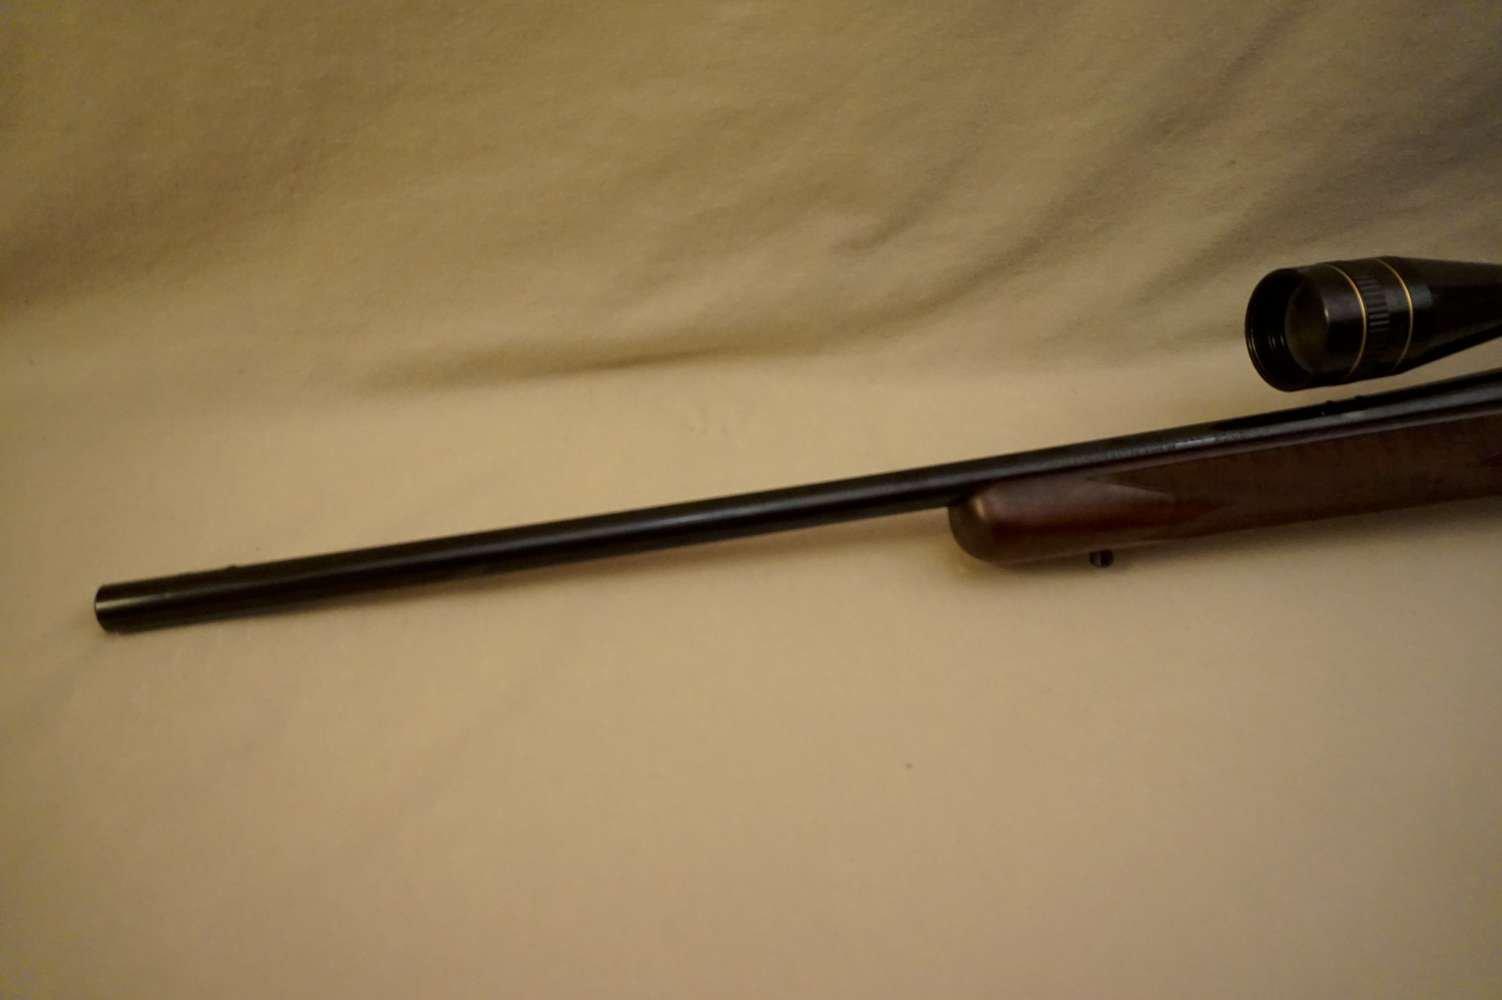 Remington M. 700D .25-06 B/A Rifle